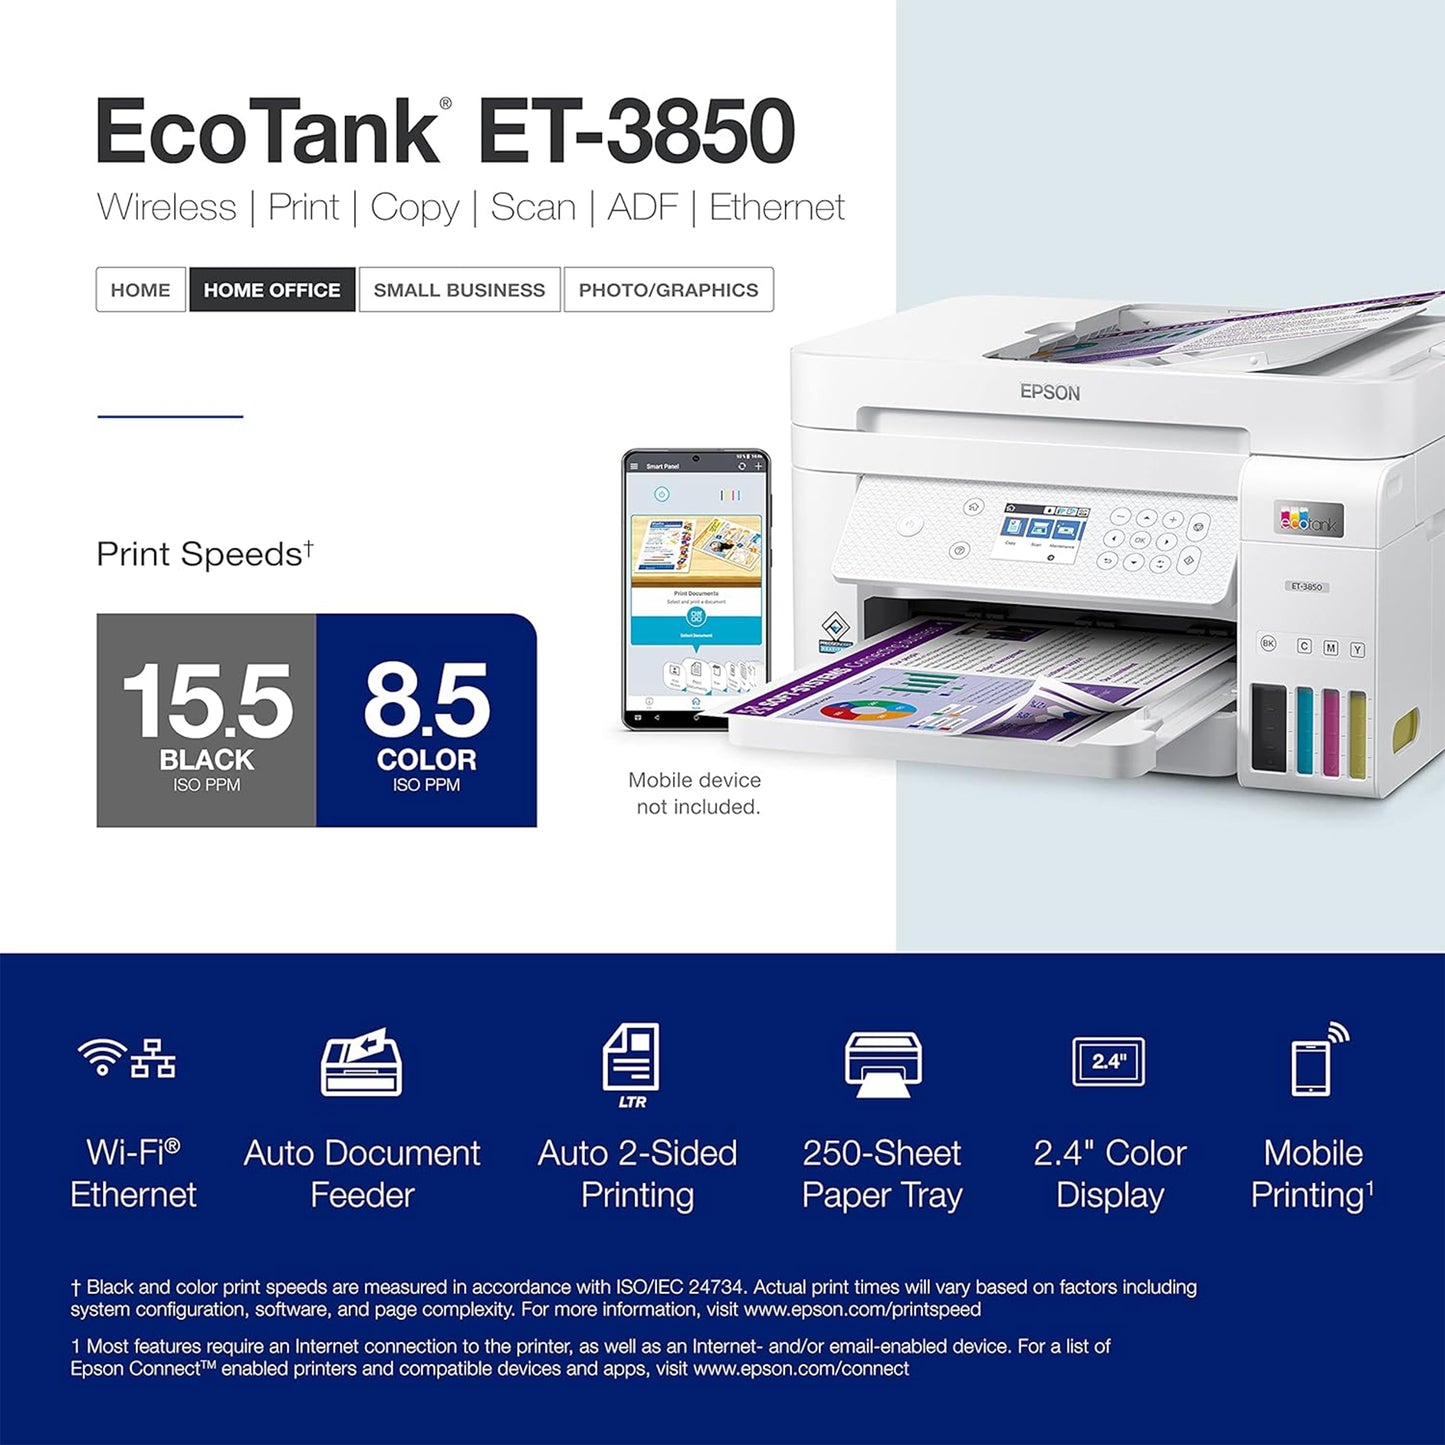 طابعة Epson EcoTank ET-3850 اللاسلكية الملونة الكل في واحد Supertank خالية من الخراطيش مع ماسح ضوئي وناسخة ووحدة تغذية المستندات التلقائية وإيثرنت - الطابعة المثالية للمكتب المنزلي، باللون الأبيض 